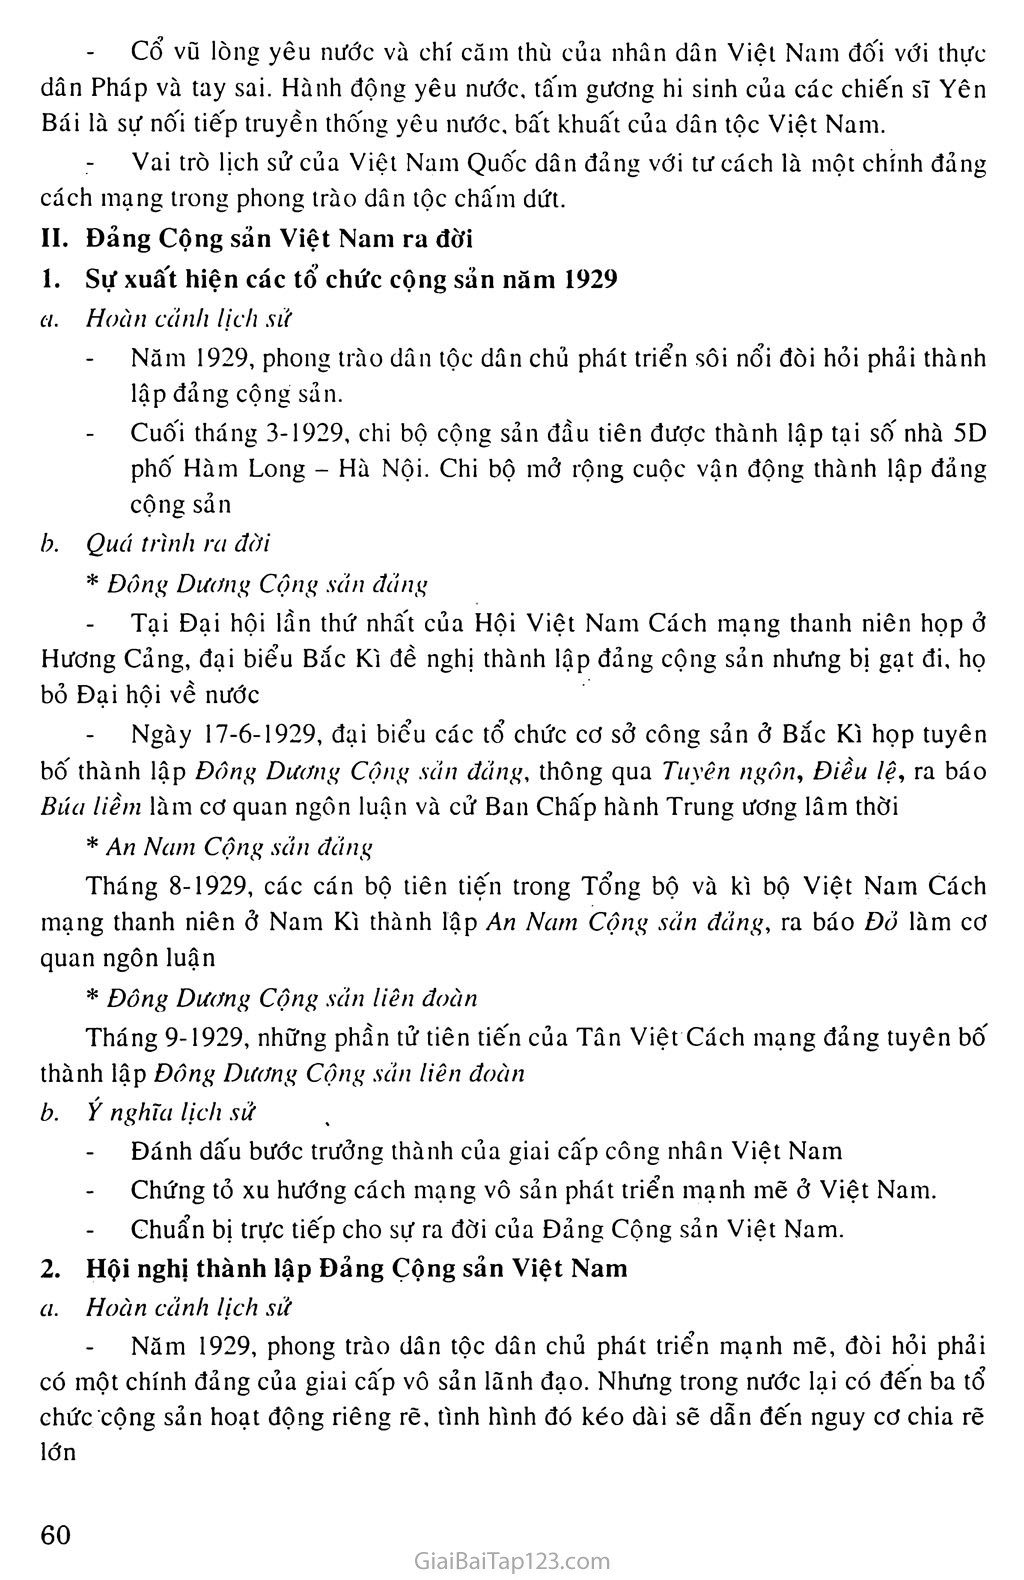 Bài 13.: Phong trào dân tộc dân chủ ở Việt Nam từ năm 1925 đến năm 1930 trang 3